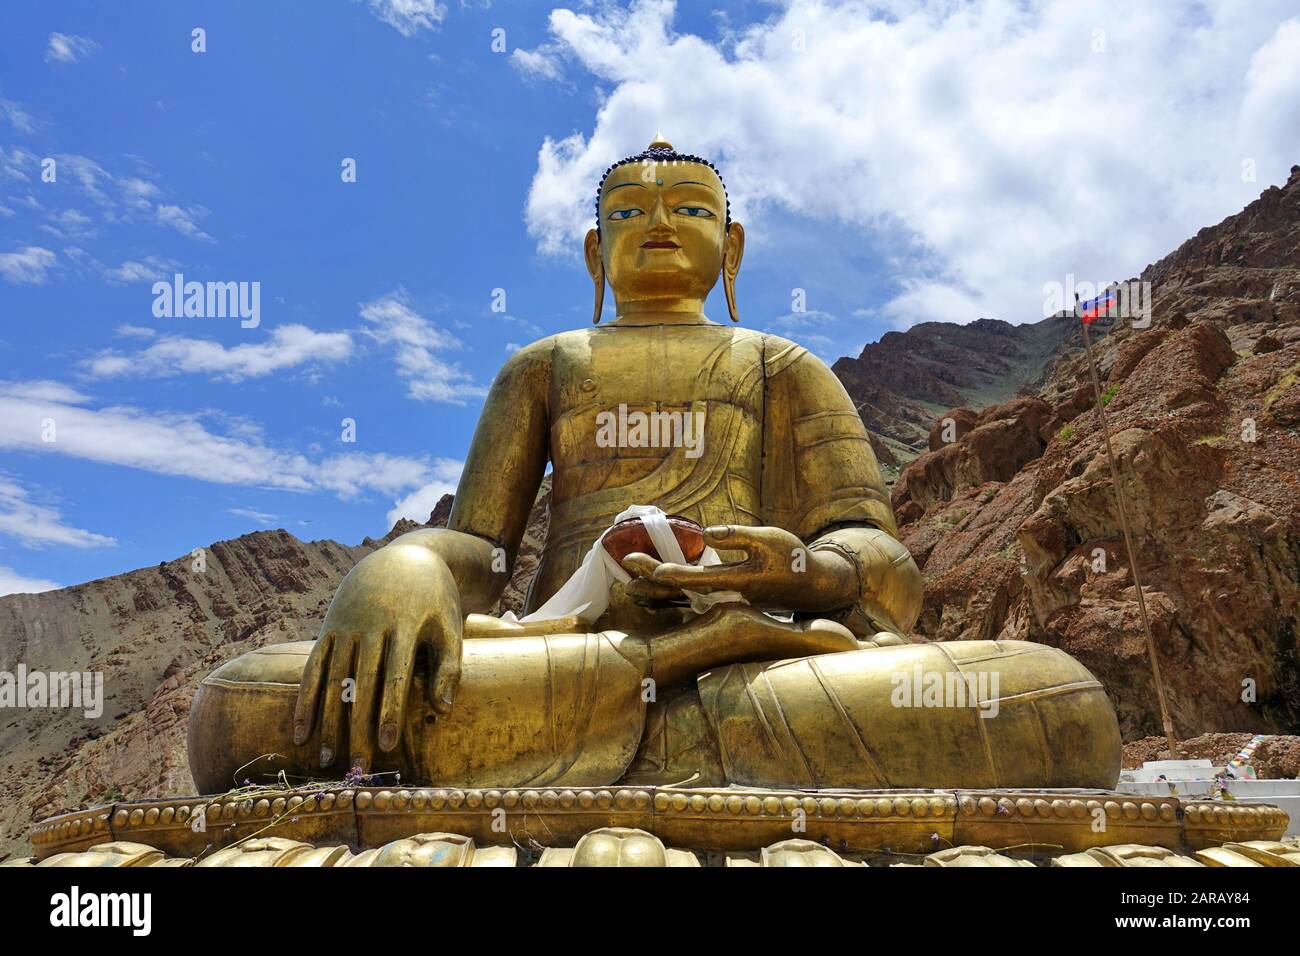 Statua del Buddha sopra il Monastero di Hemis un monastero buddista himalayano (gompa) del lignaggio di Drukpa, in Hemis, Ladakh, India. Foto Stock